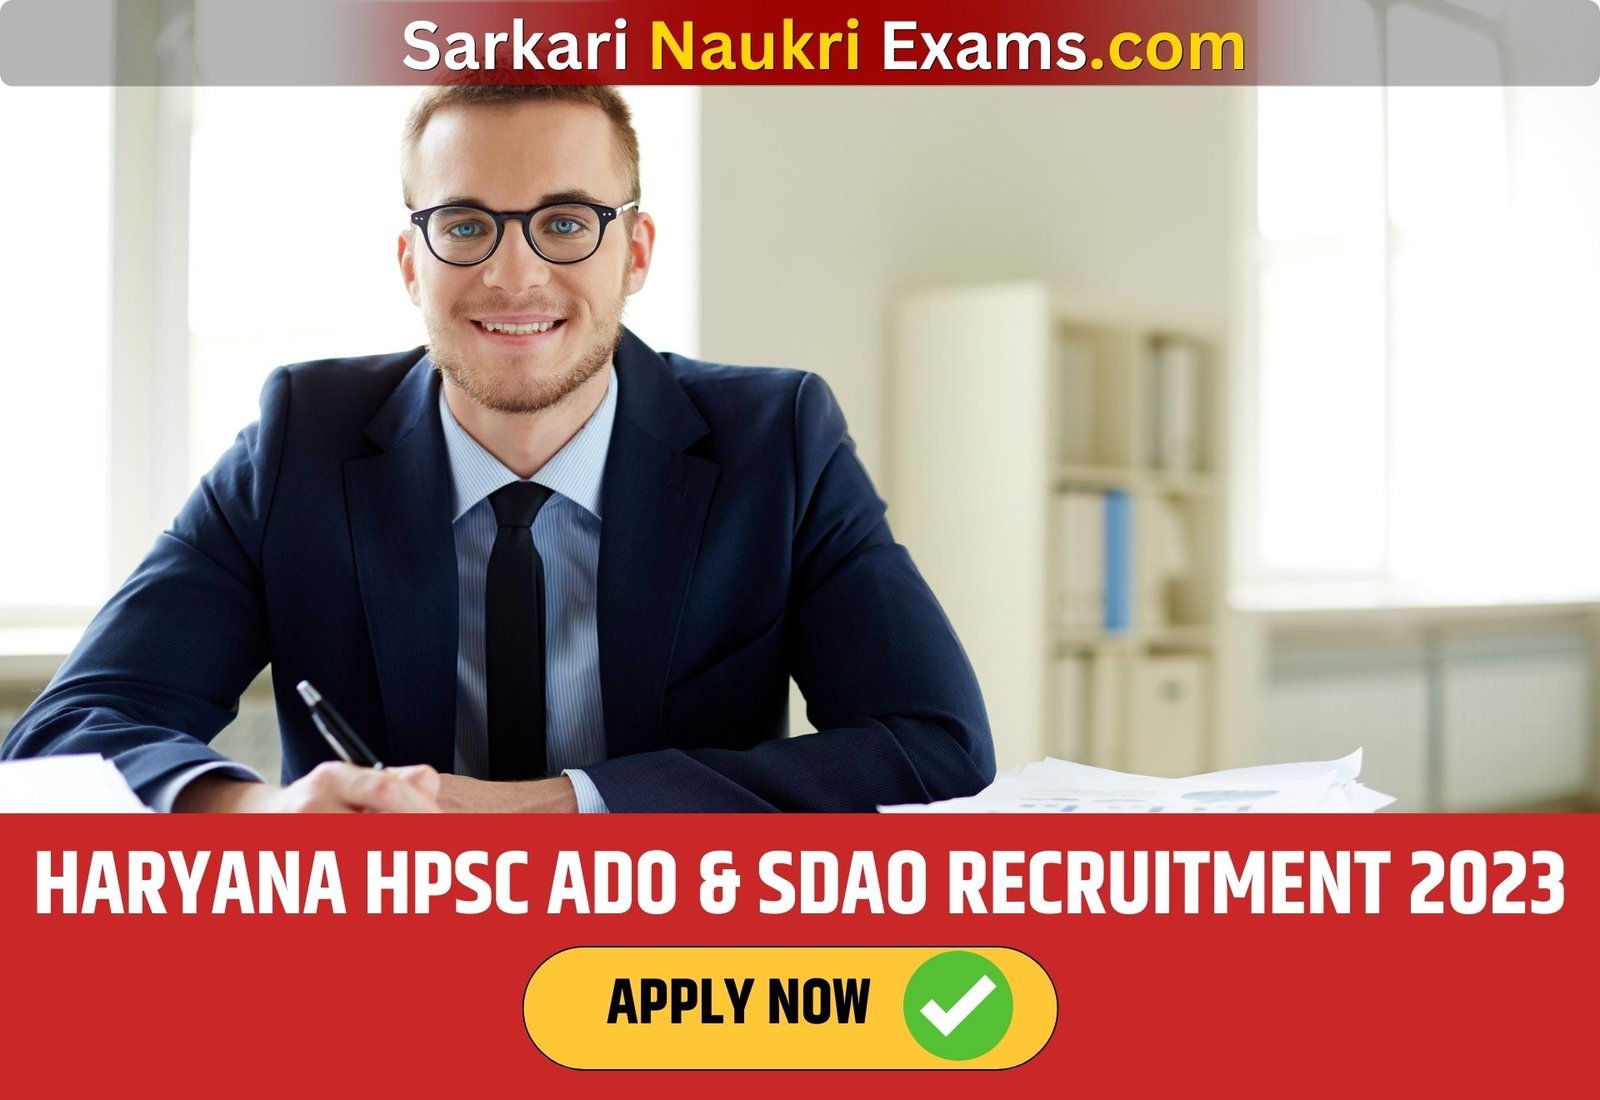 Haryana HPSC ADO & SDAO Recruitment 2023